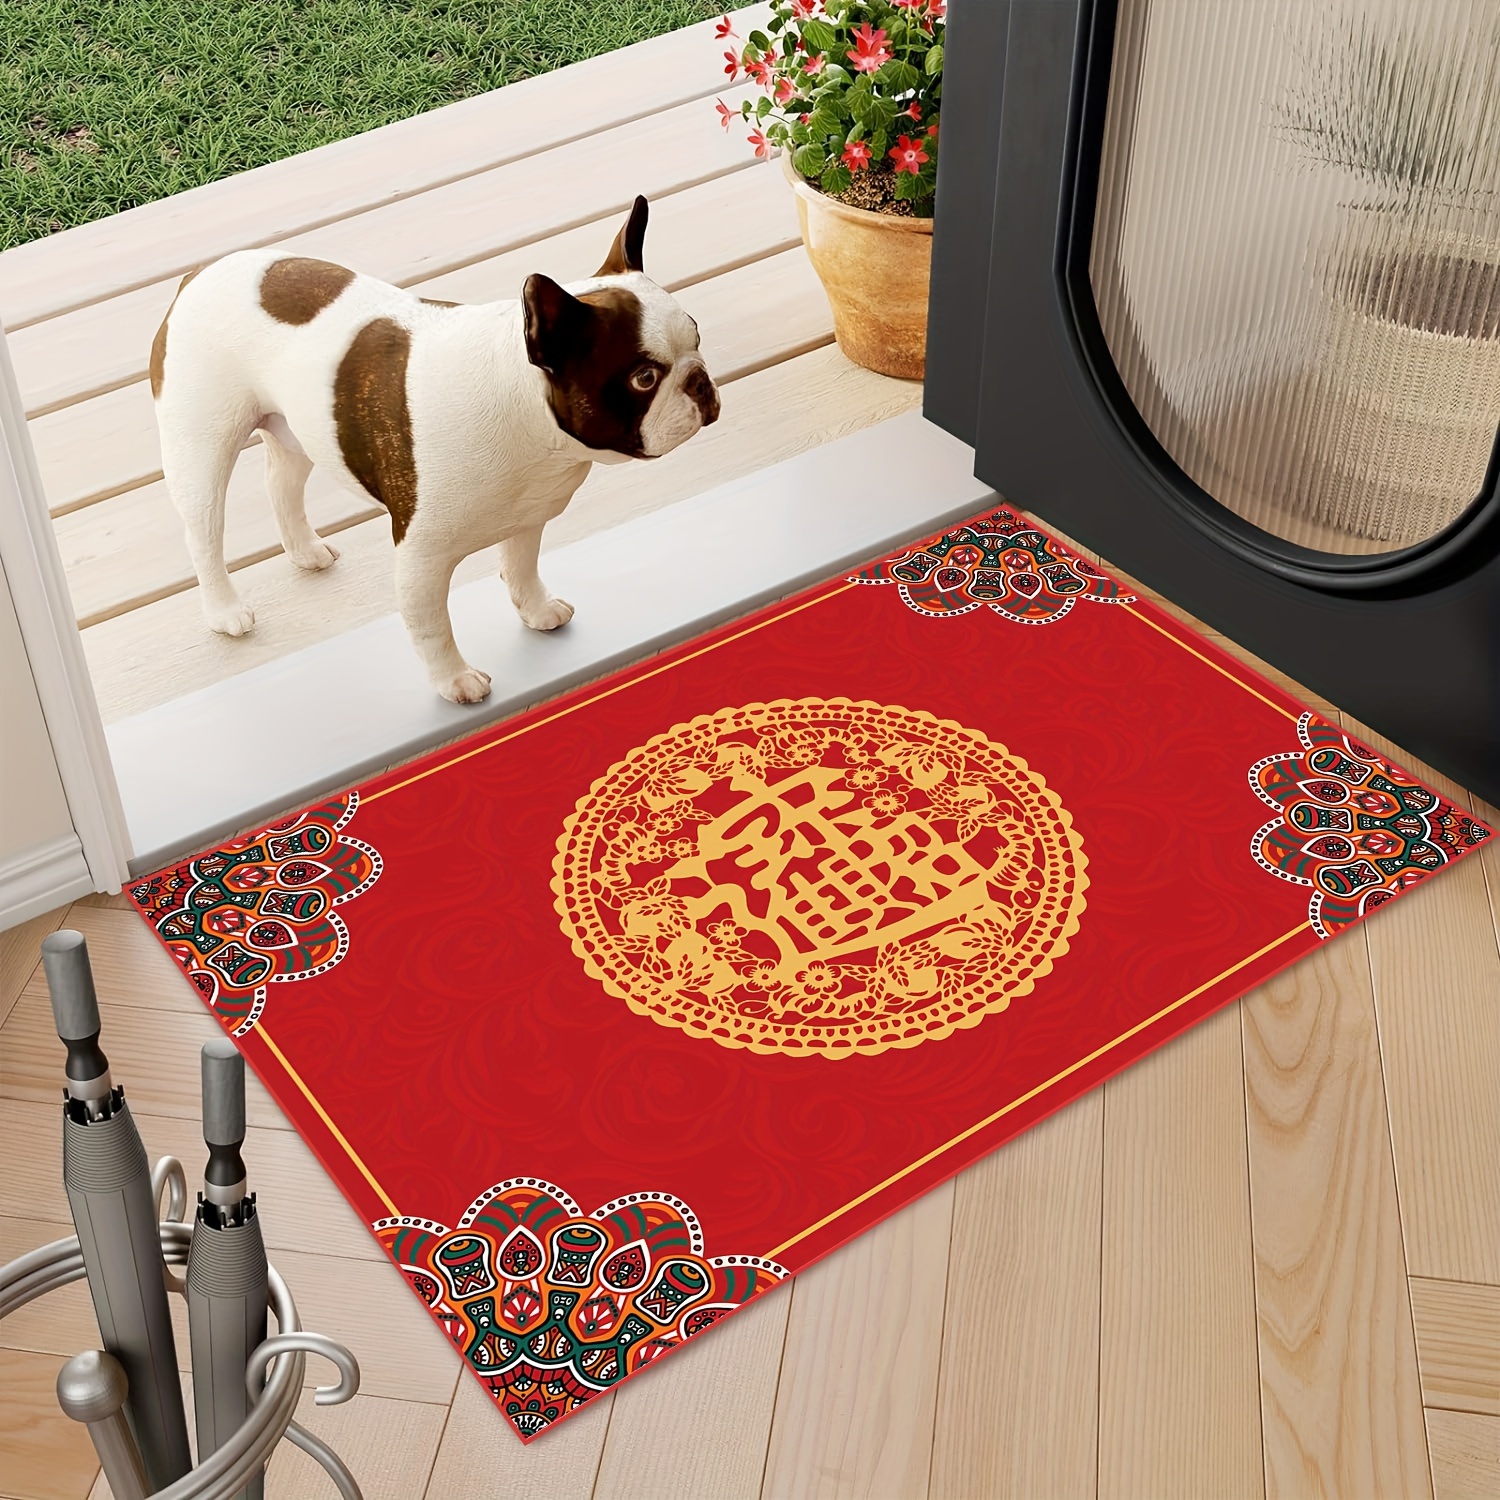 Tapete de interior con parte trasera de goma, color rojo sólido,  antideslizante, alfombras de cocina y tapetes